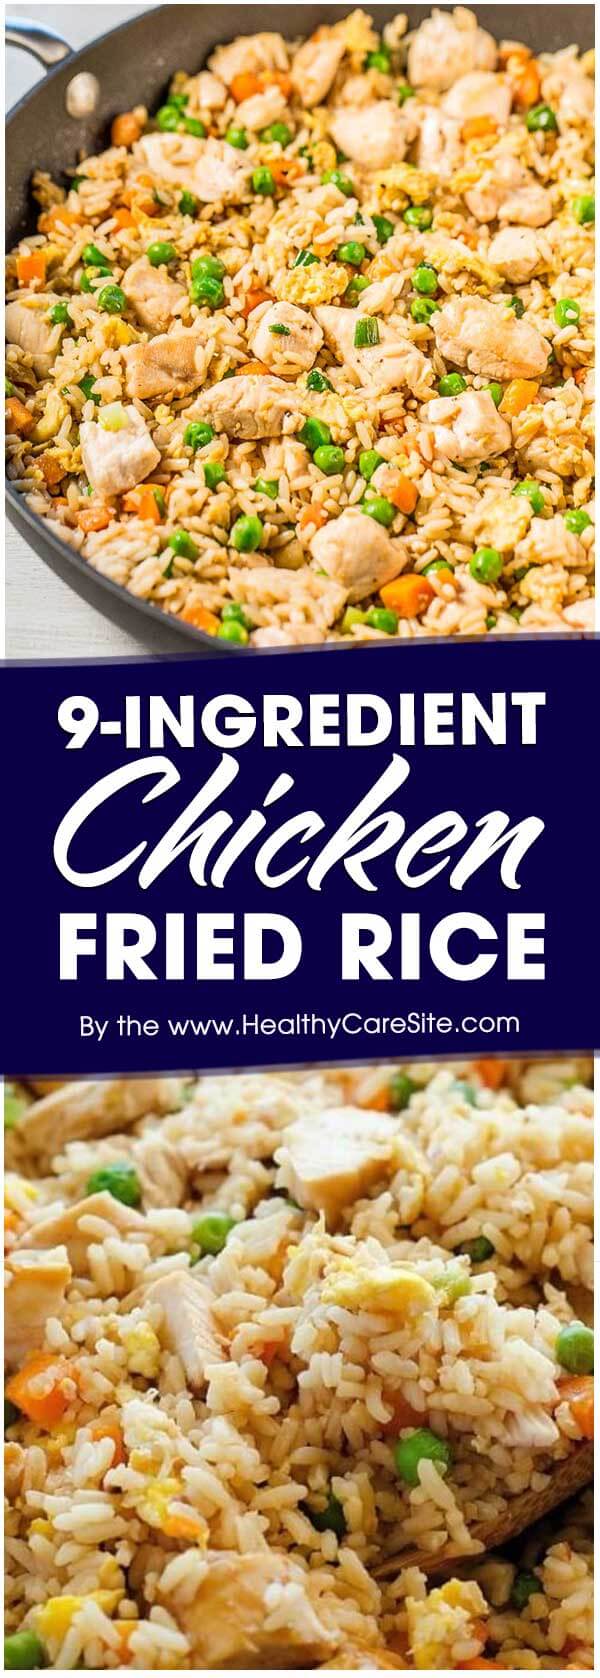 9-Ingredient Chicken Fried Rice